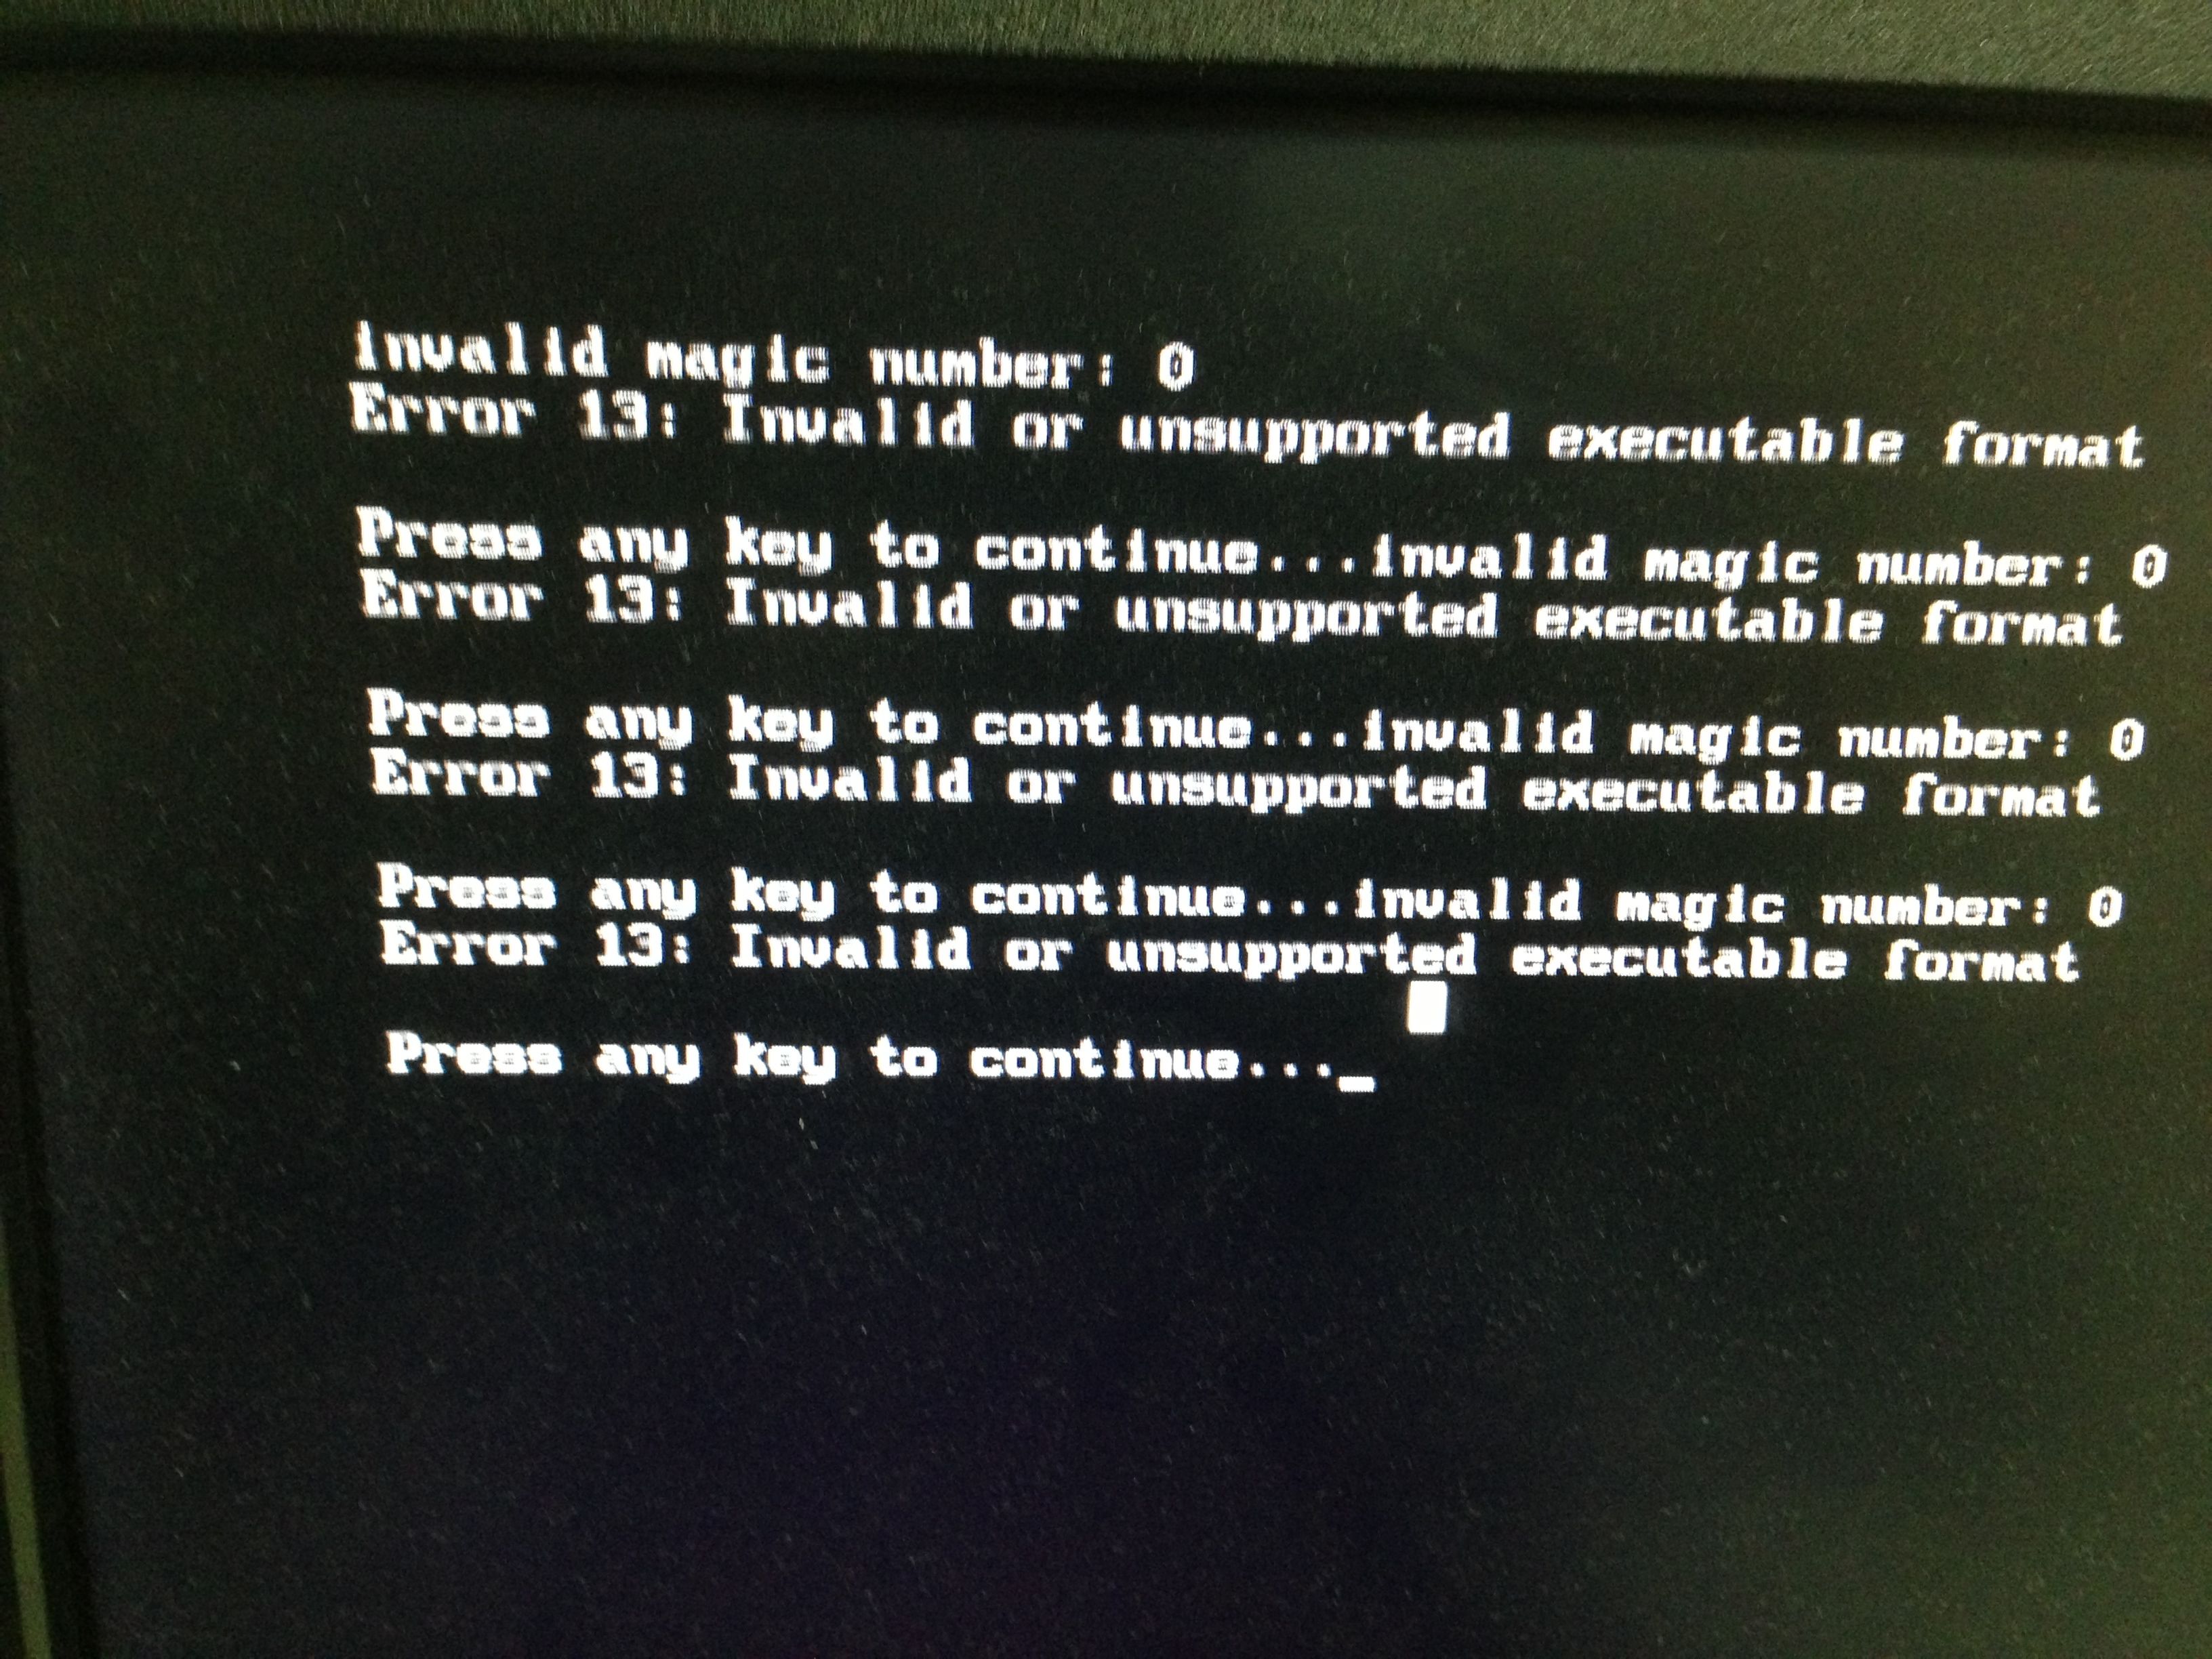 弱弱的问下ibm电脑如何重装系统